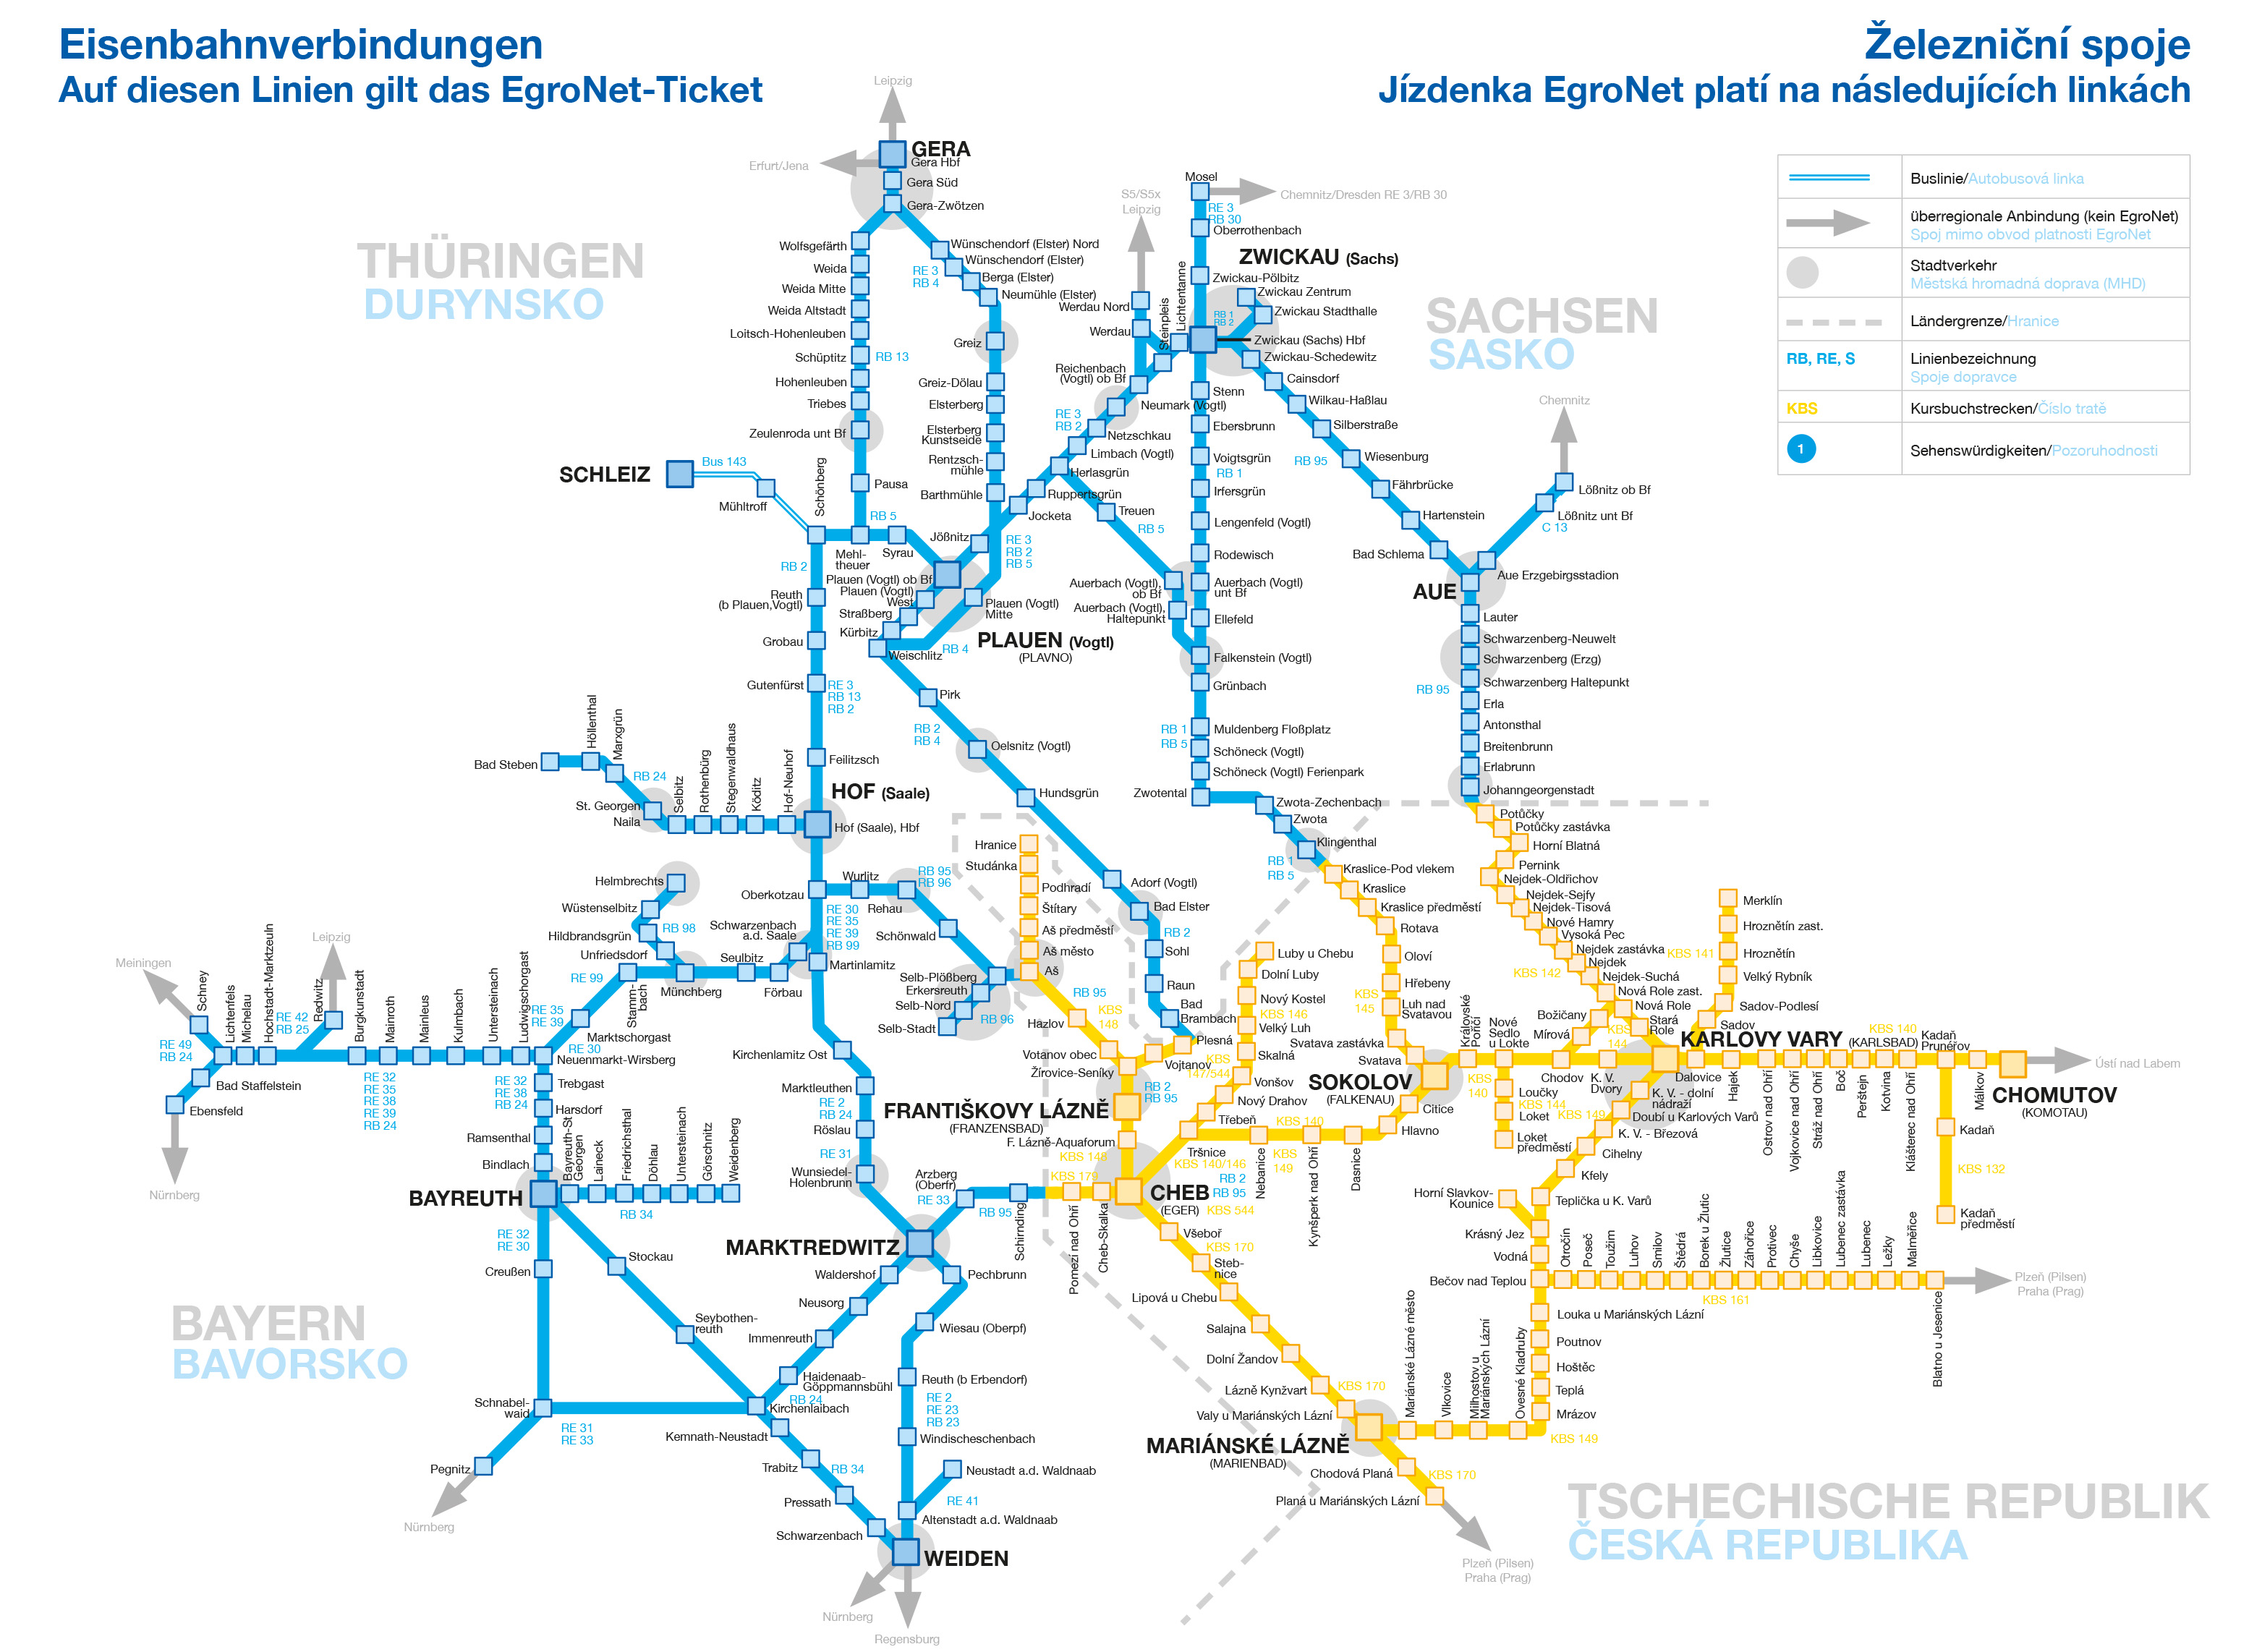 Netzkarte mit den Bahnlinien in der EgroNet-Region